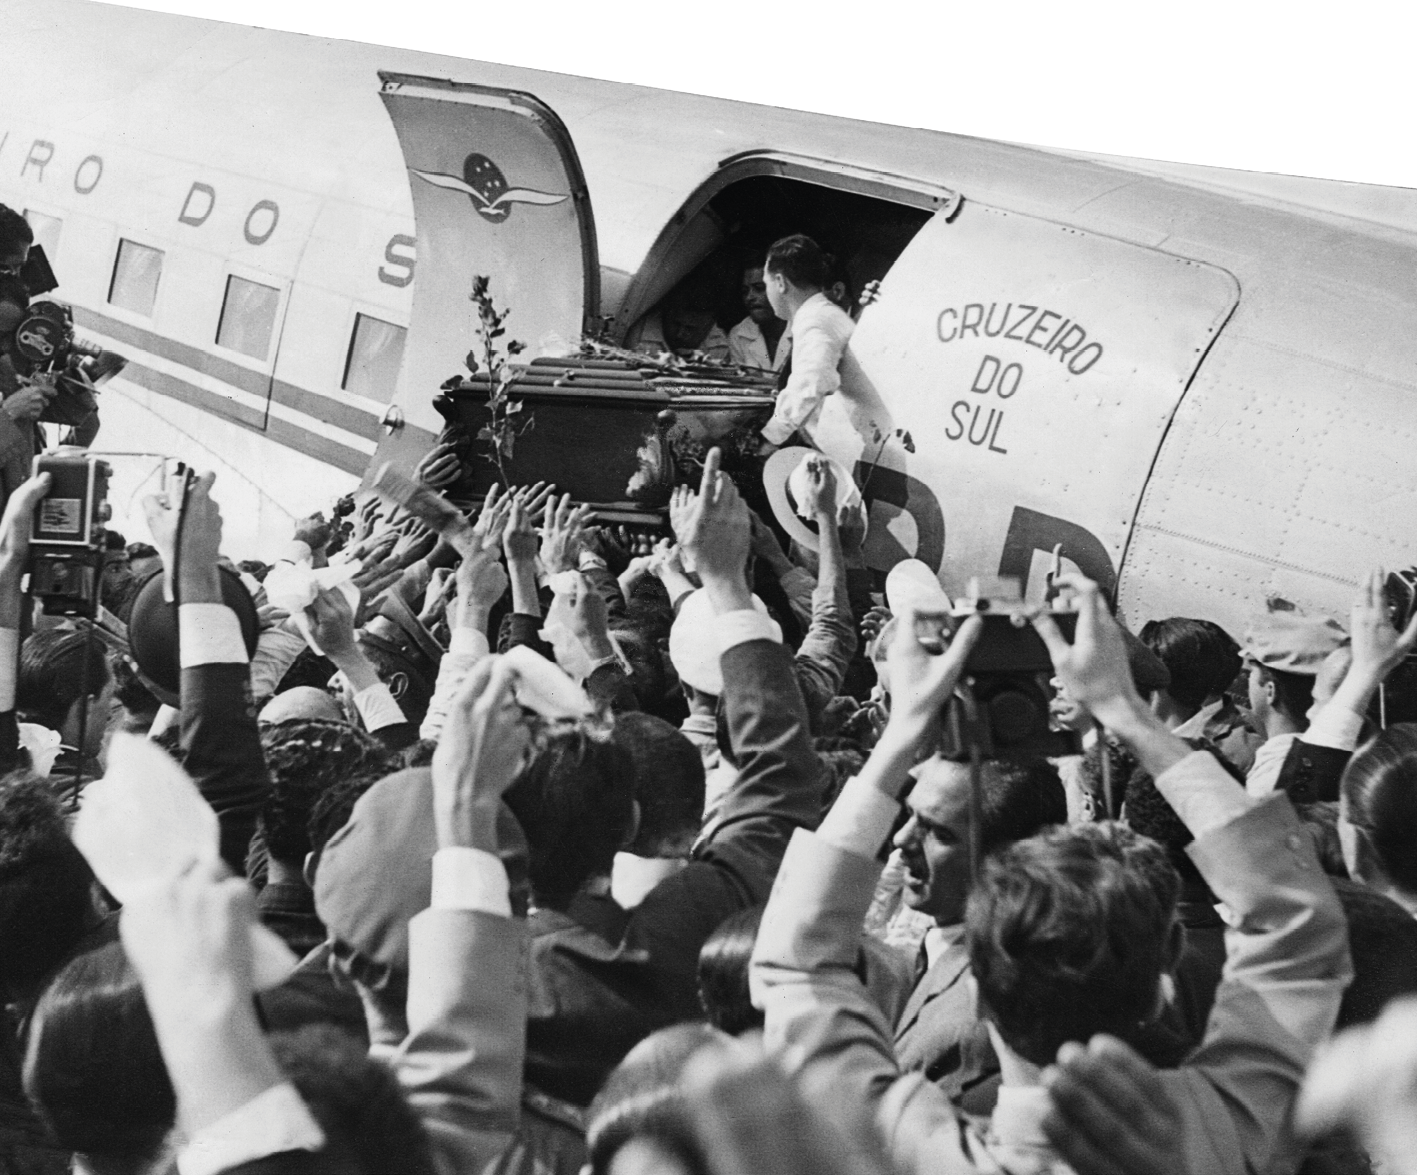 Fotografia em preto e branco. Homens apoiando um caixão na porta de um avião. Ao redor uma multidão. Algumas pessoas fazem registro de imagens, outras acenam.